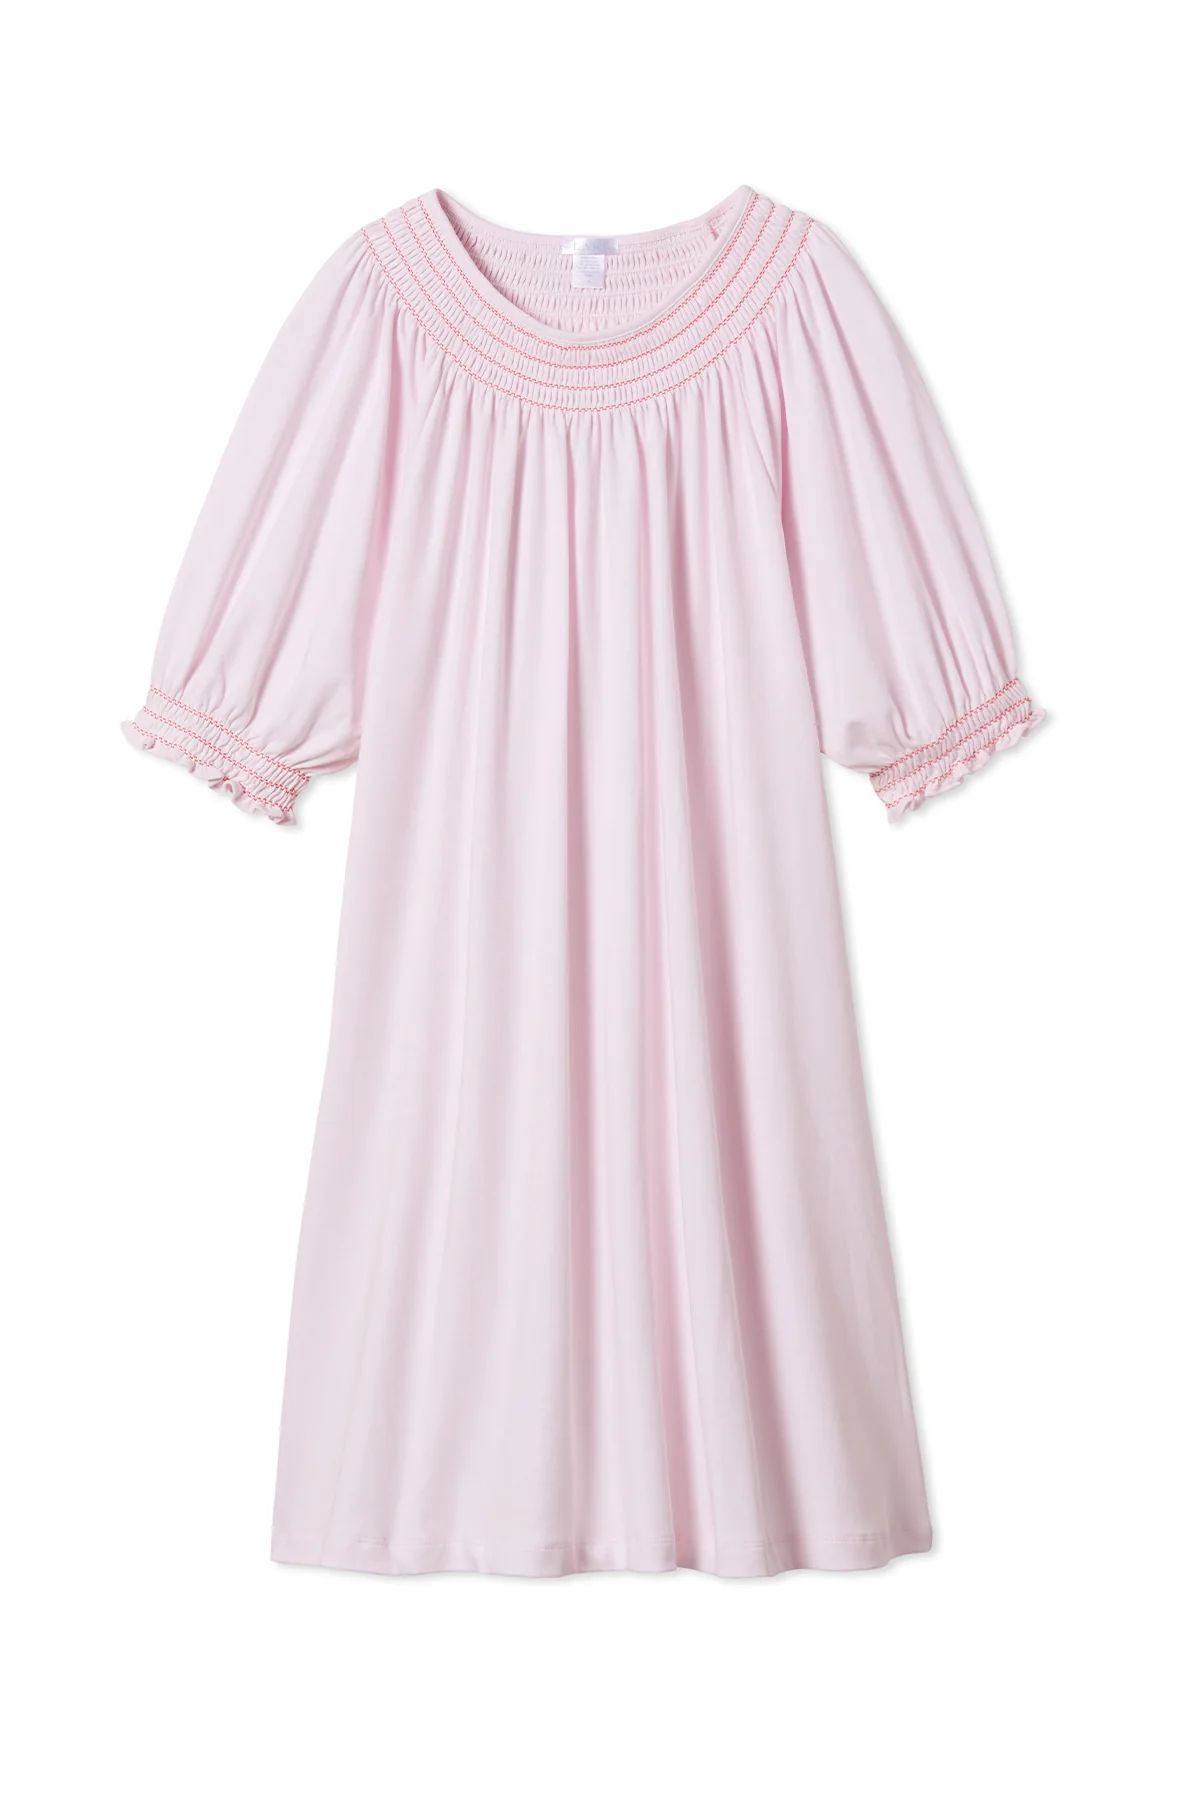 Pima Smocked Nightgown in Azalea | LAKE Pajamas